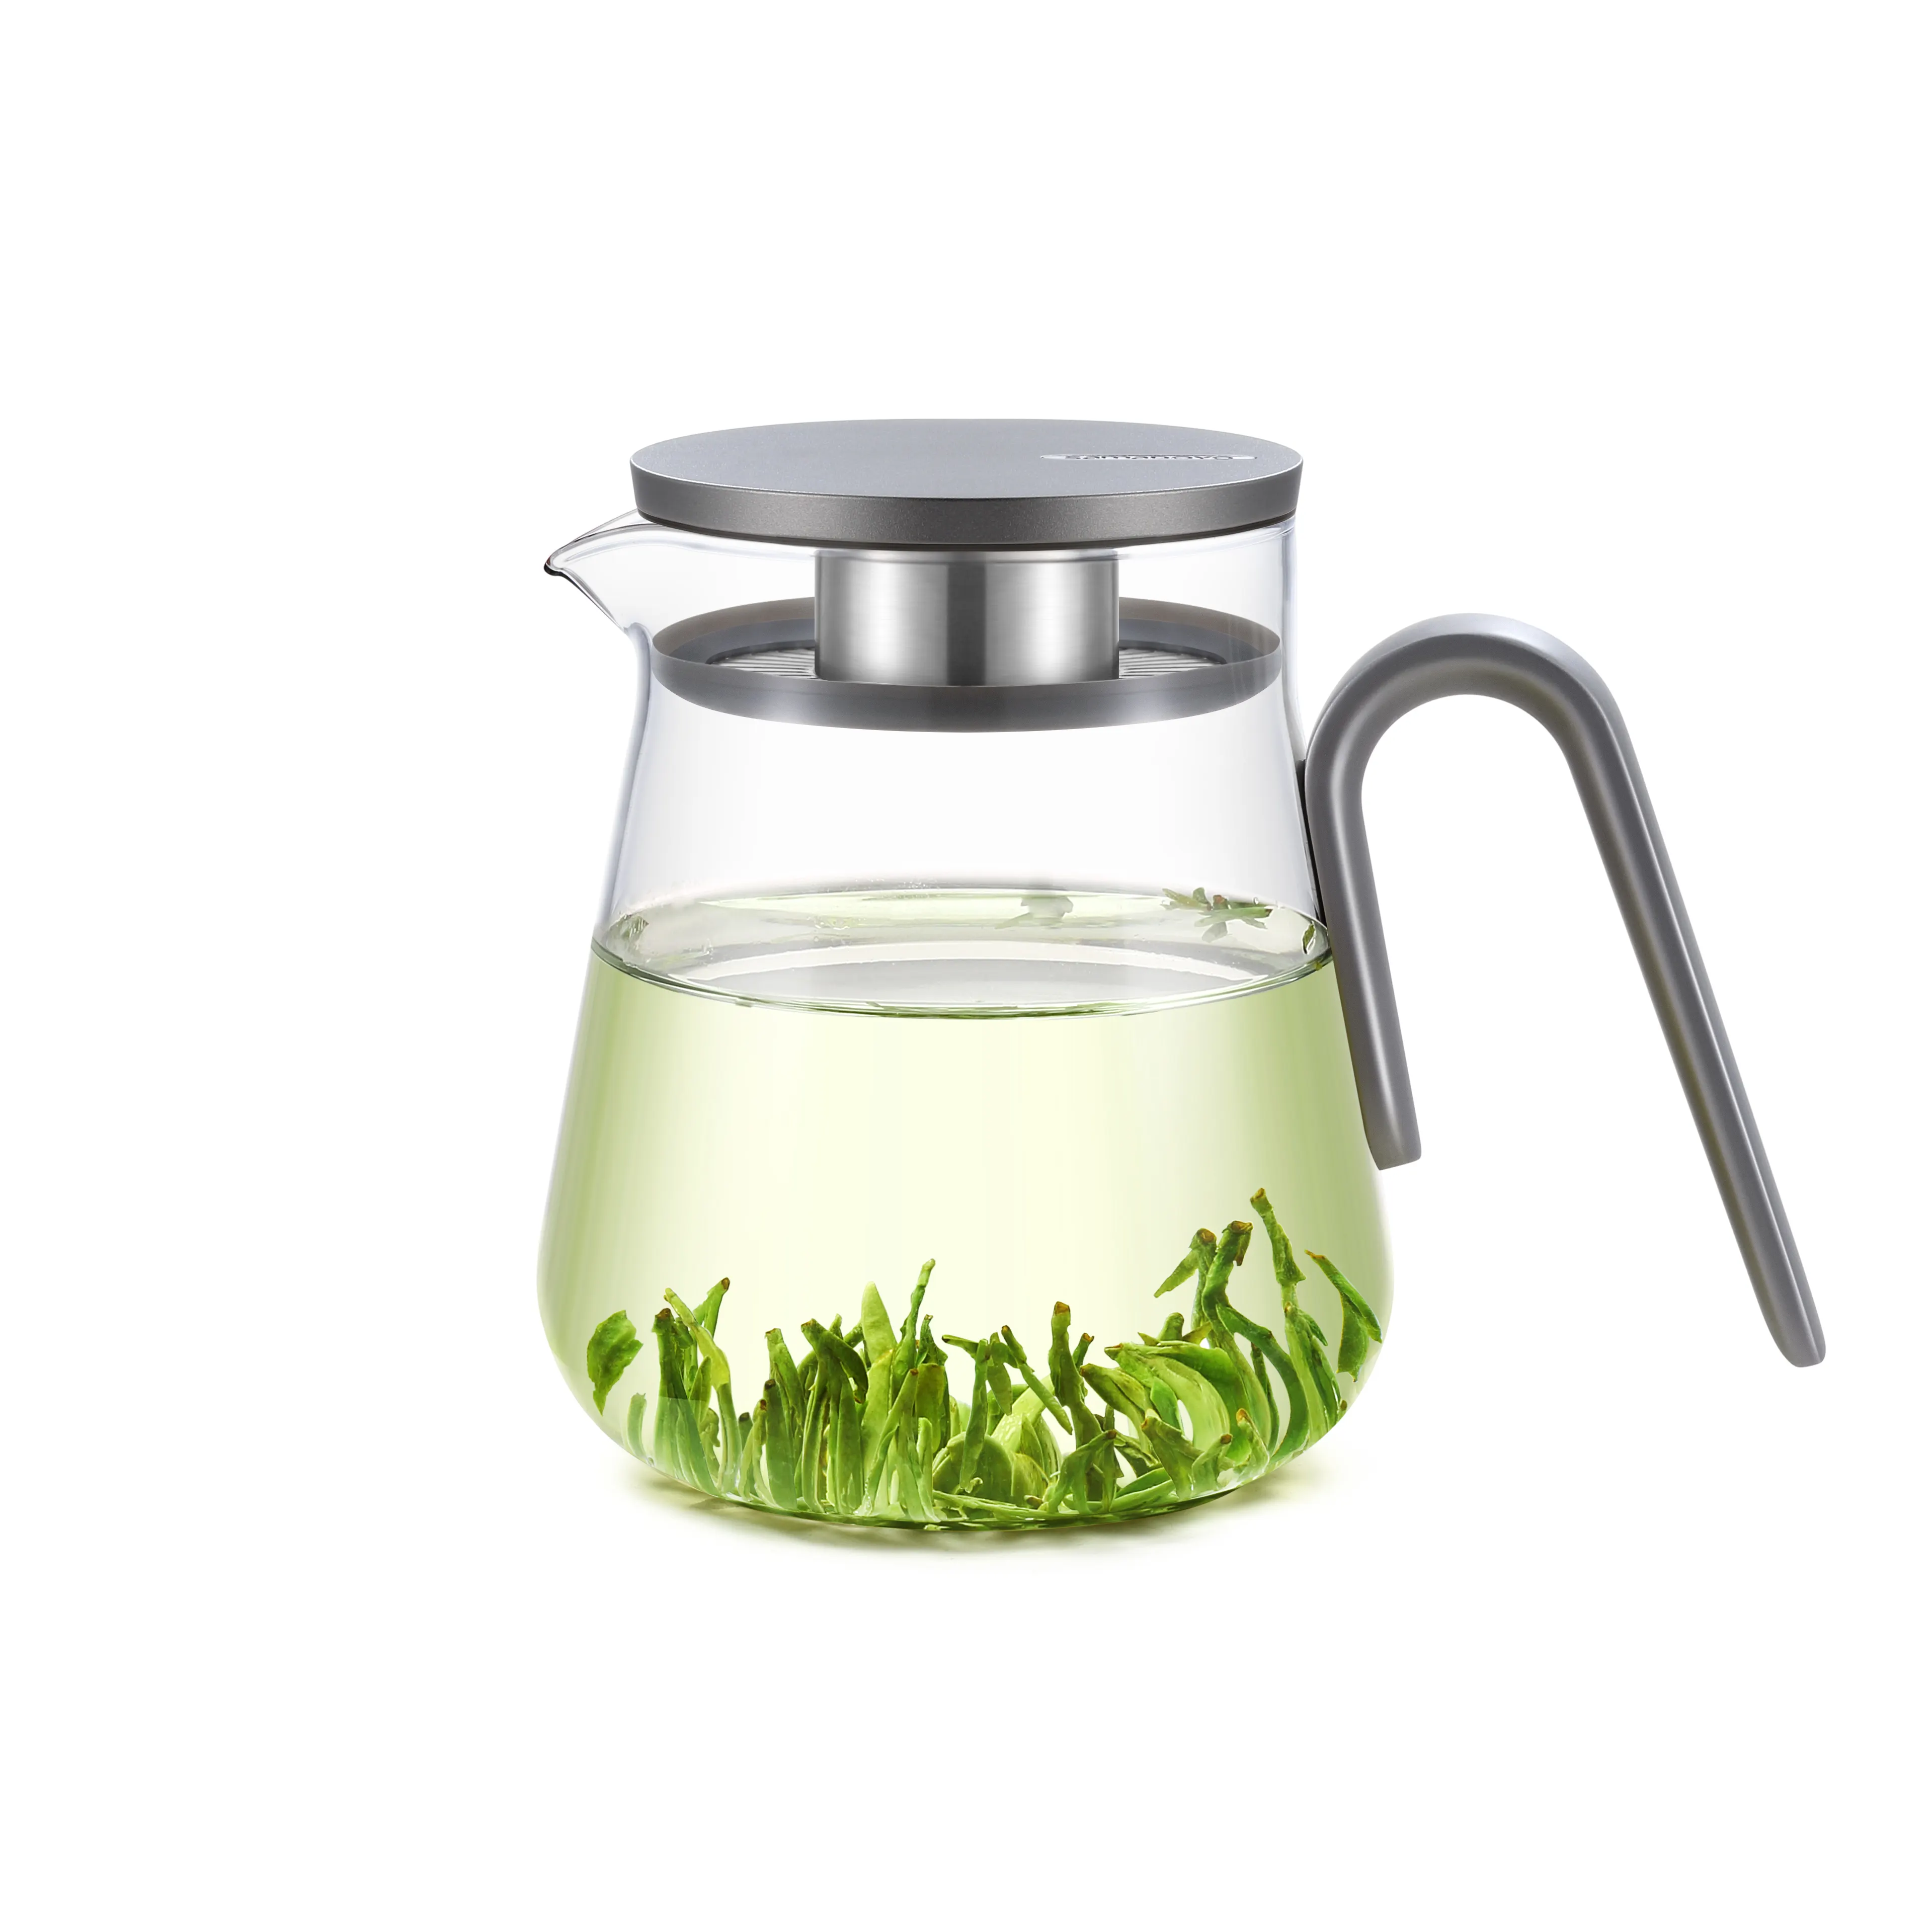 Samadoyo S/S bộ lọc trà thủy tinh tích hợp ấm trà bình nước bình trà có nắp nhôm